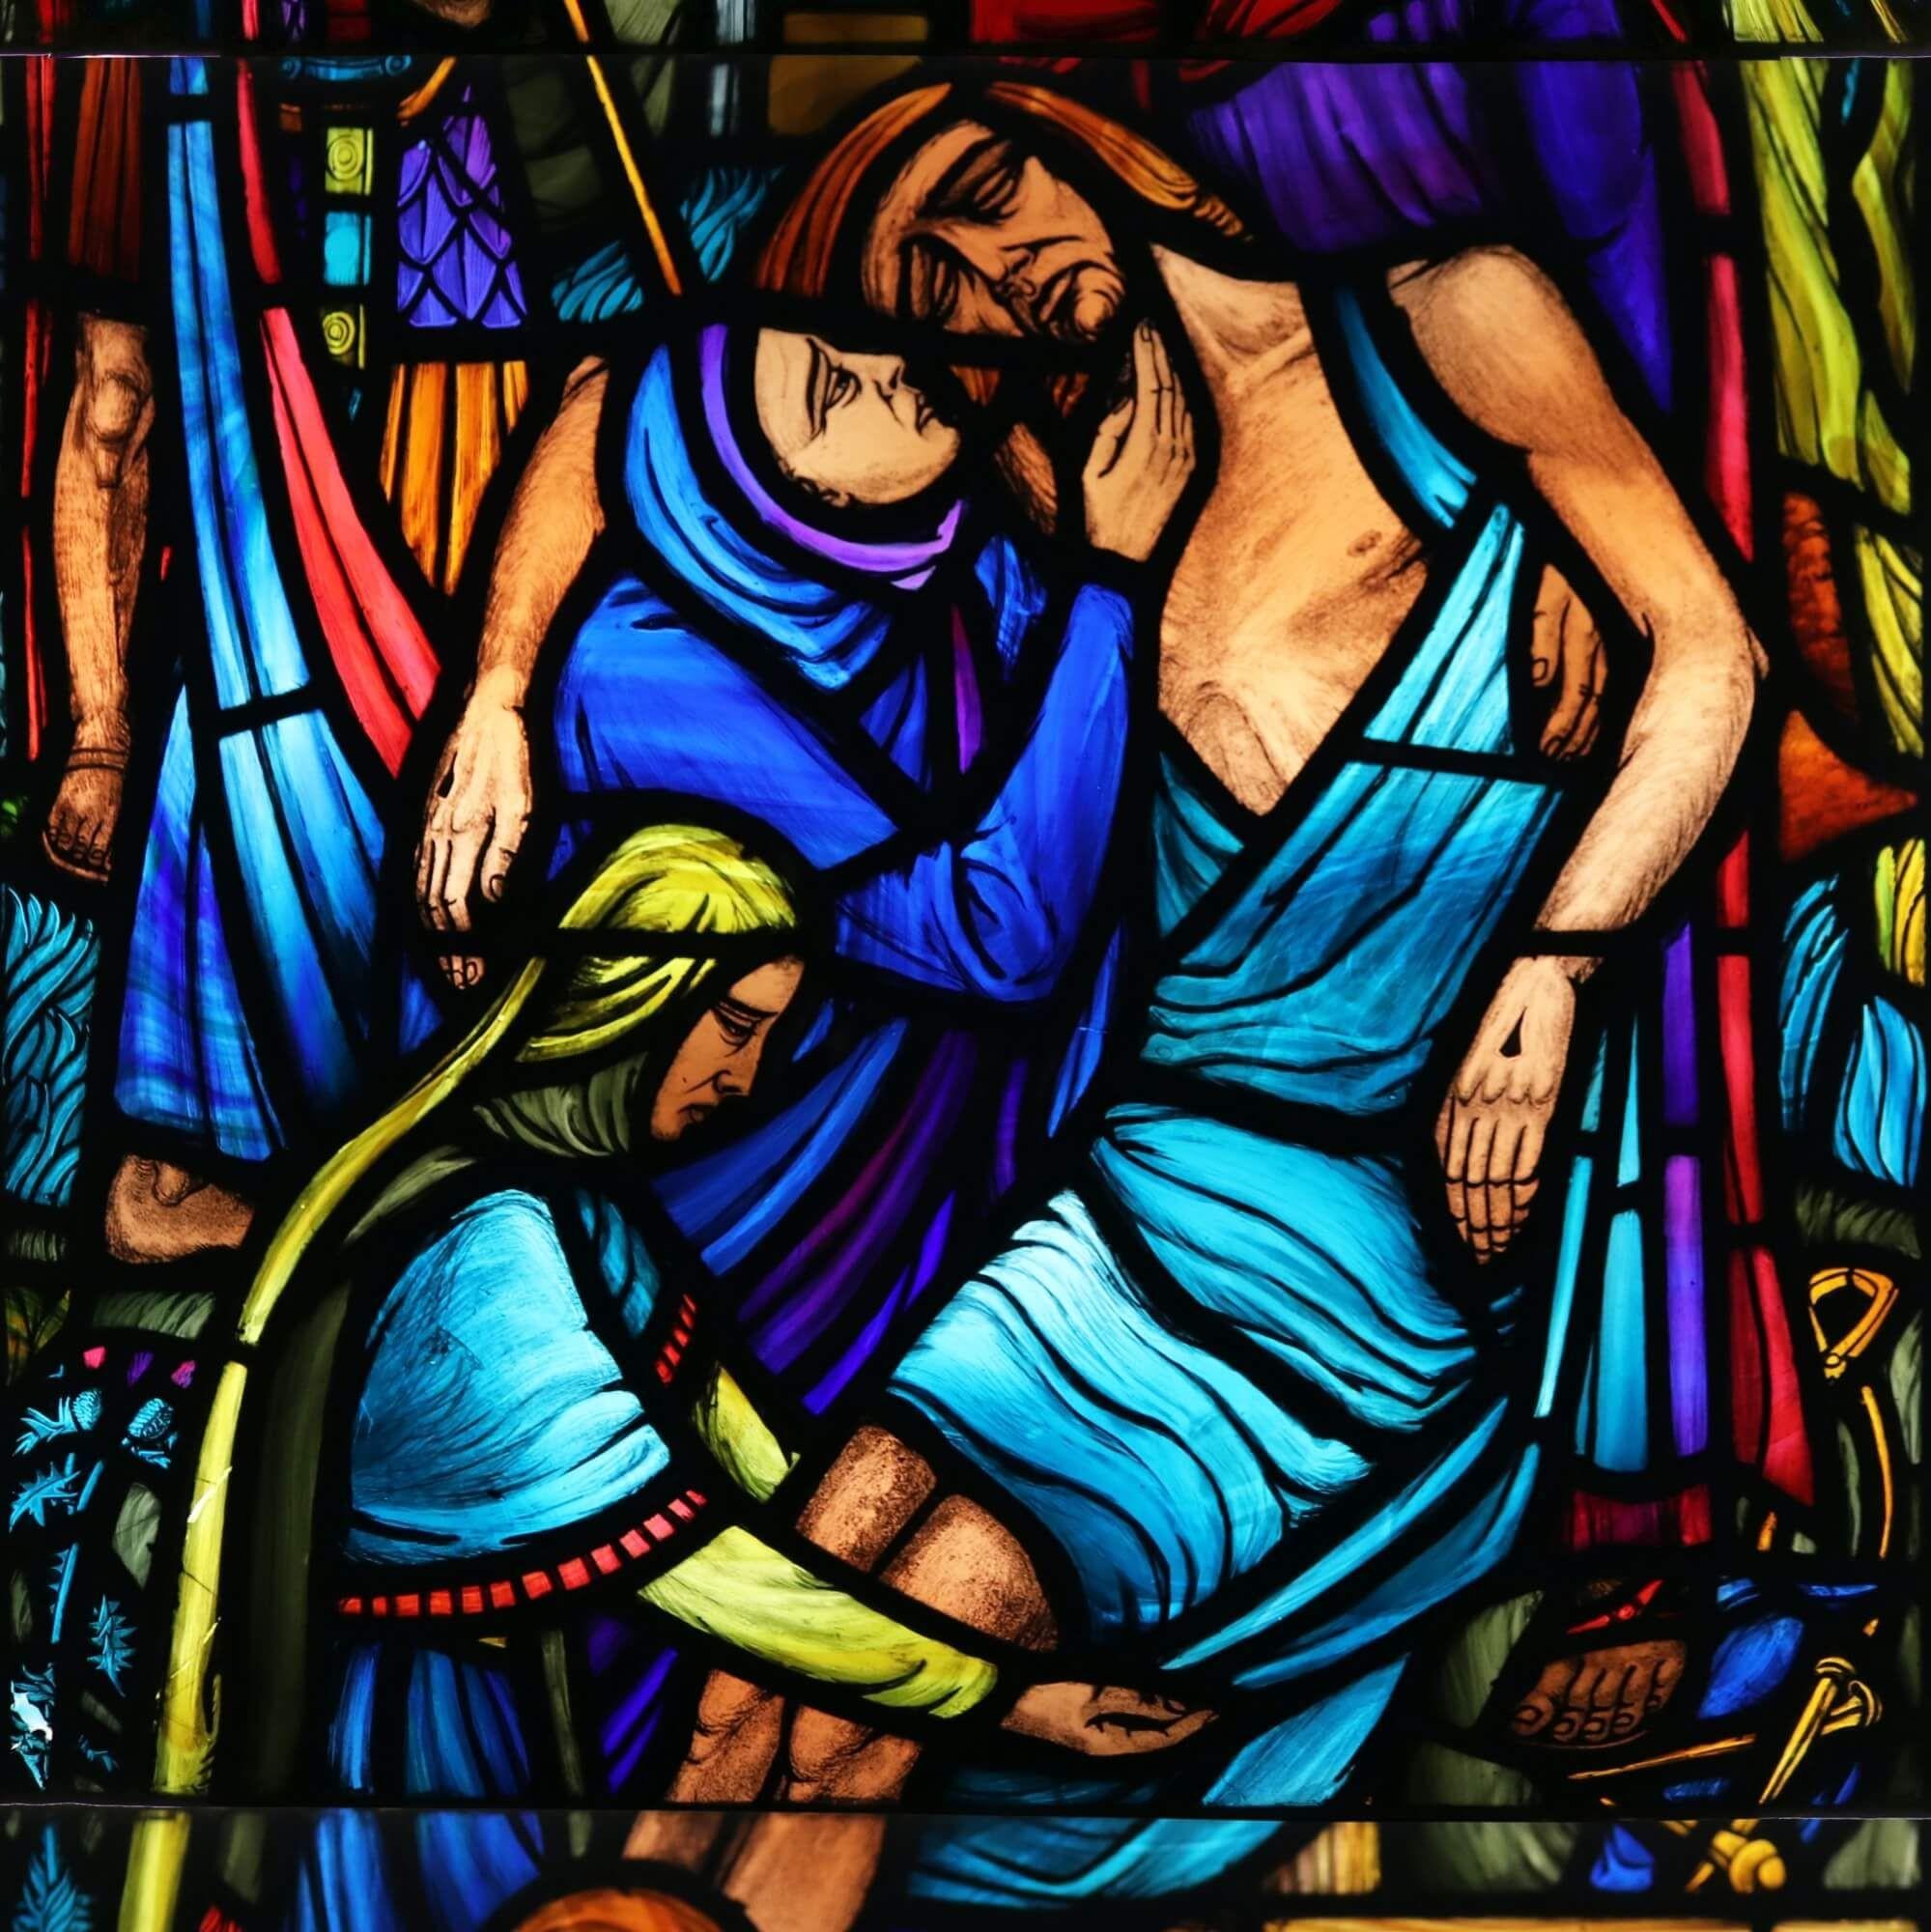 Ein lebhaftes Kirchenfenster, das eine religiöse Szene aus der Mitte des 20. Dieses wunderschöne Glasfenster ist eines von vier, die wir zum Verkauf anbieten. Es wurde ursprünglich in der ehemaligen Pfarrkirche in Glenlivet, Schottland, installiert